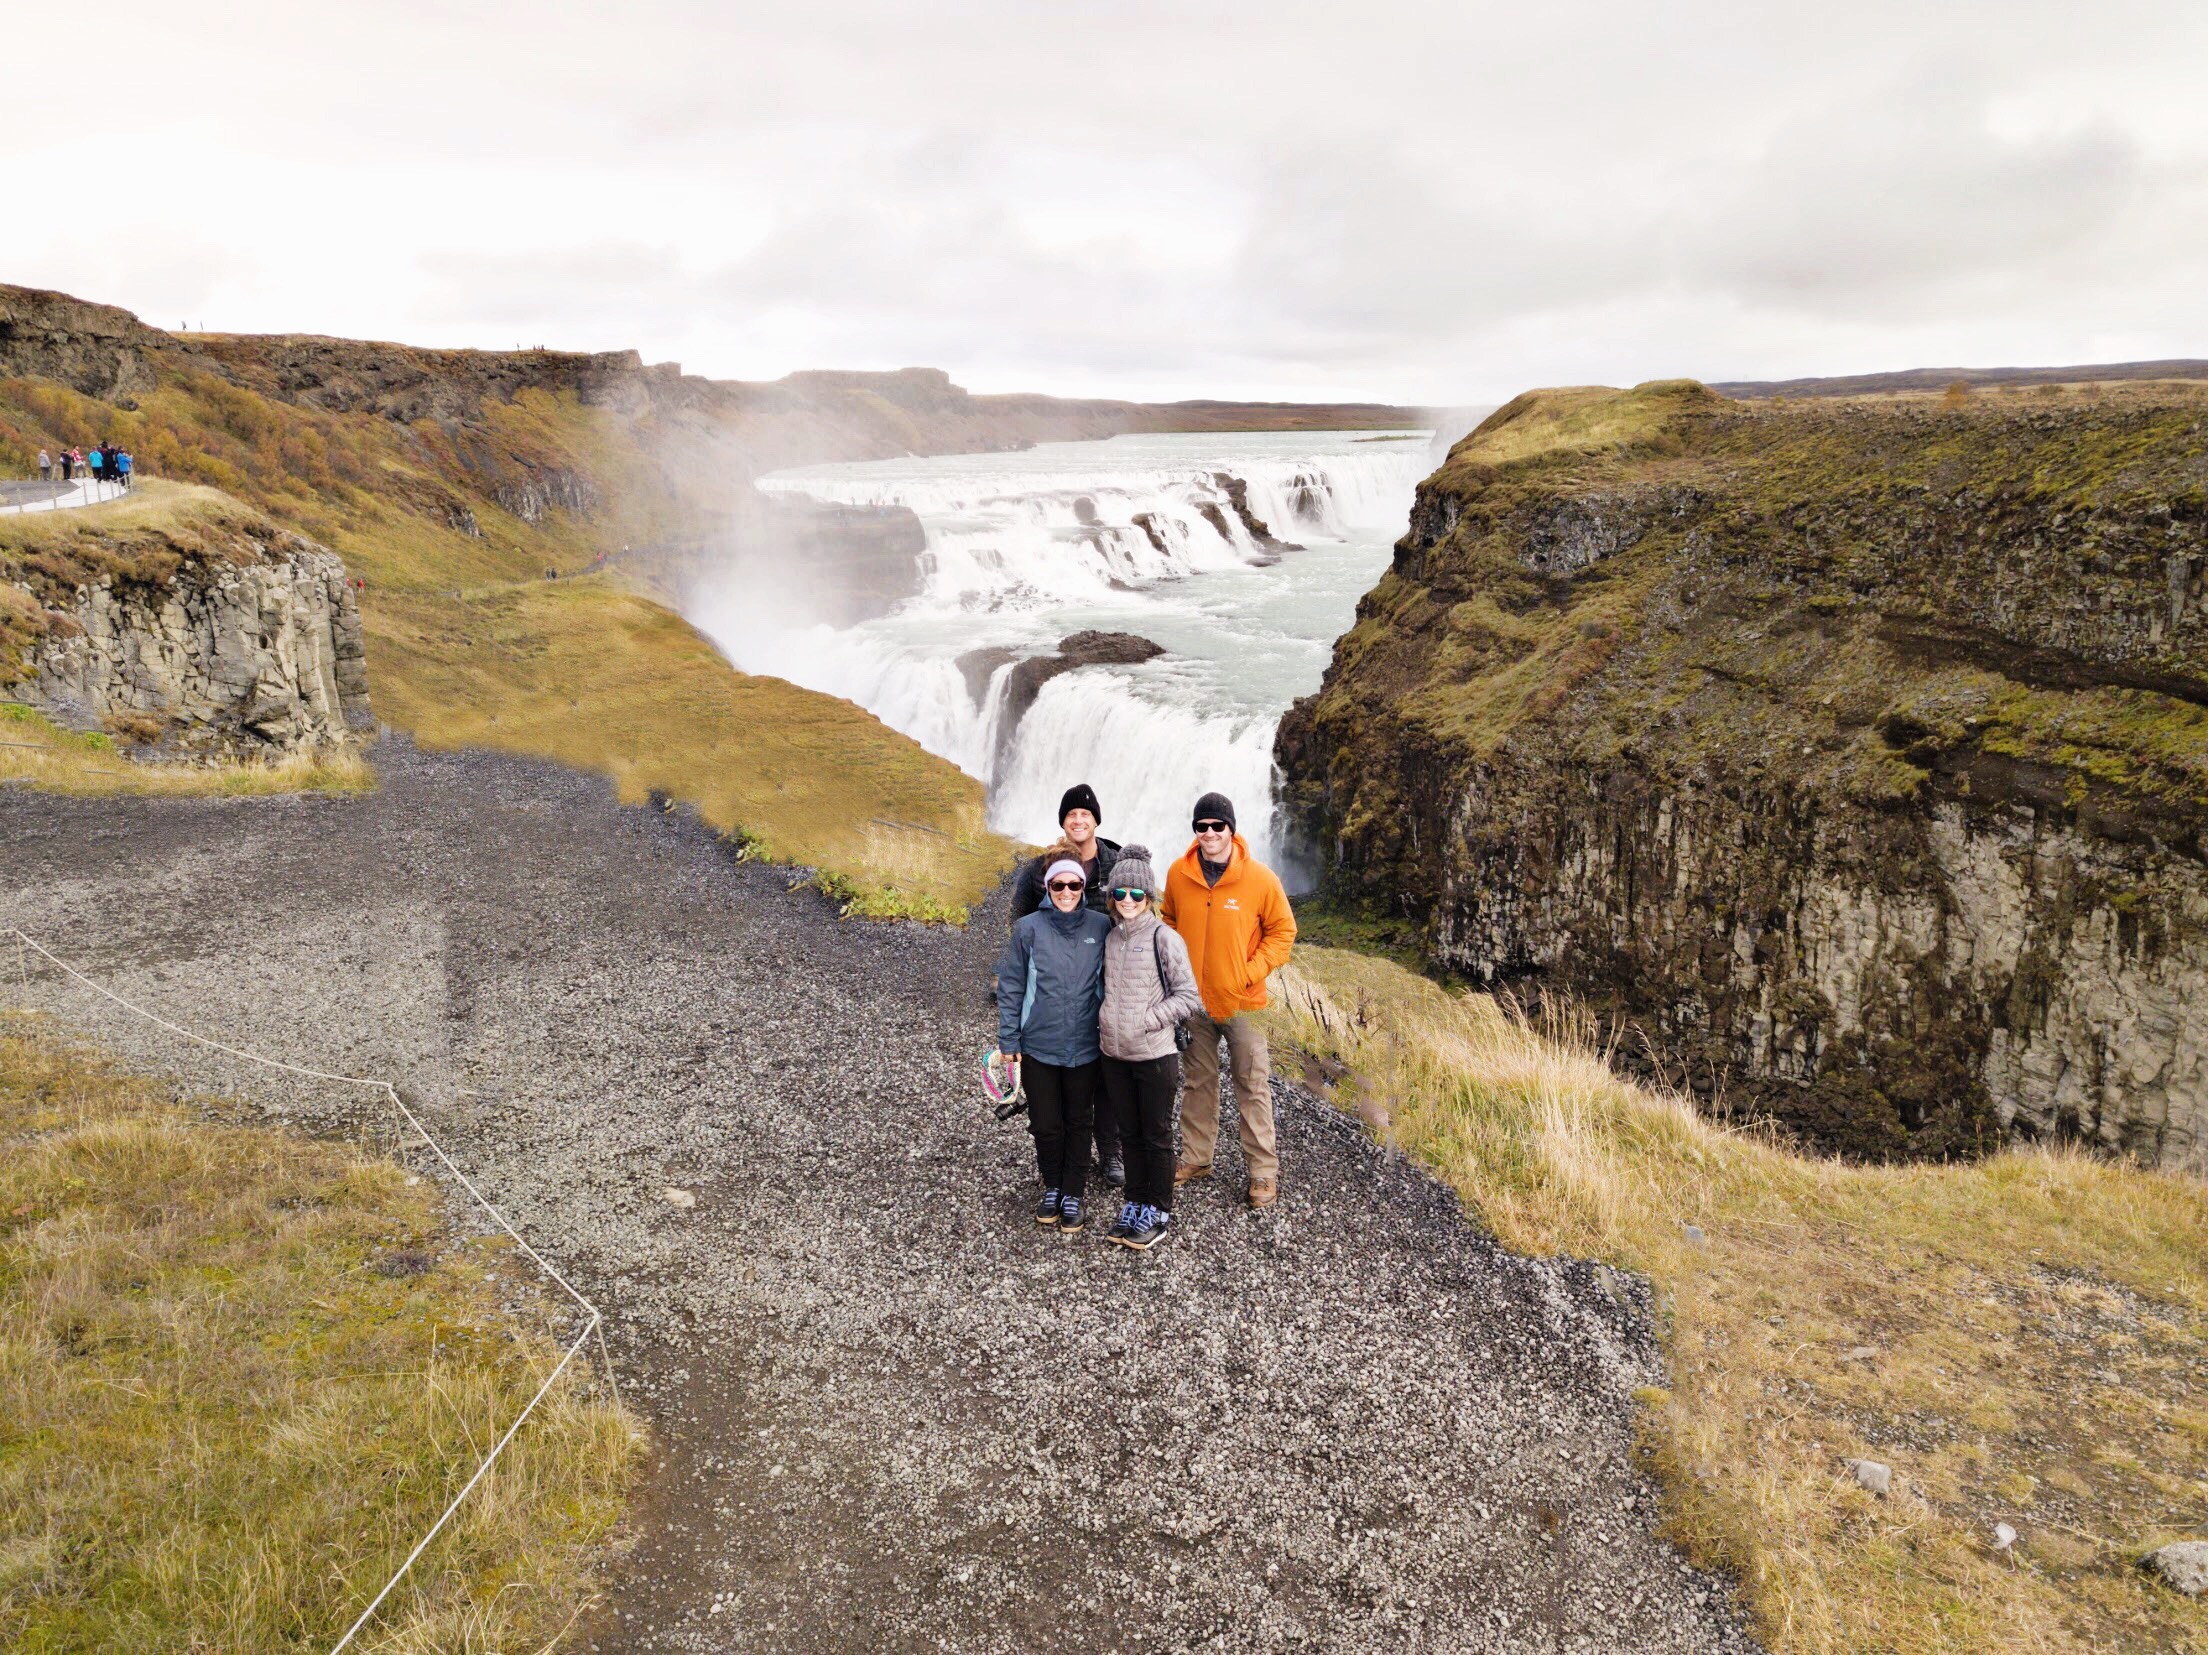 3 Days In Reykjavik - Reykjavik Iceland - Things To Do In Reykjavik - Reykjavik Shopping - Reykjavik Restaurants - Reykjavik Travel - Reykjavik Hotels - Reykjavik Itinerary - Golden Circle Tour - Reykjavik Waterfalls - Iceland Tours - Iceland Travel - Iceland Itinerary - Iceland Travel Blog - #travel #iceland #reykjavik